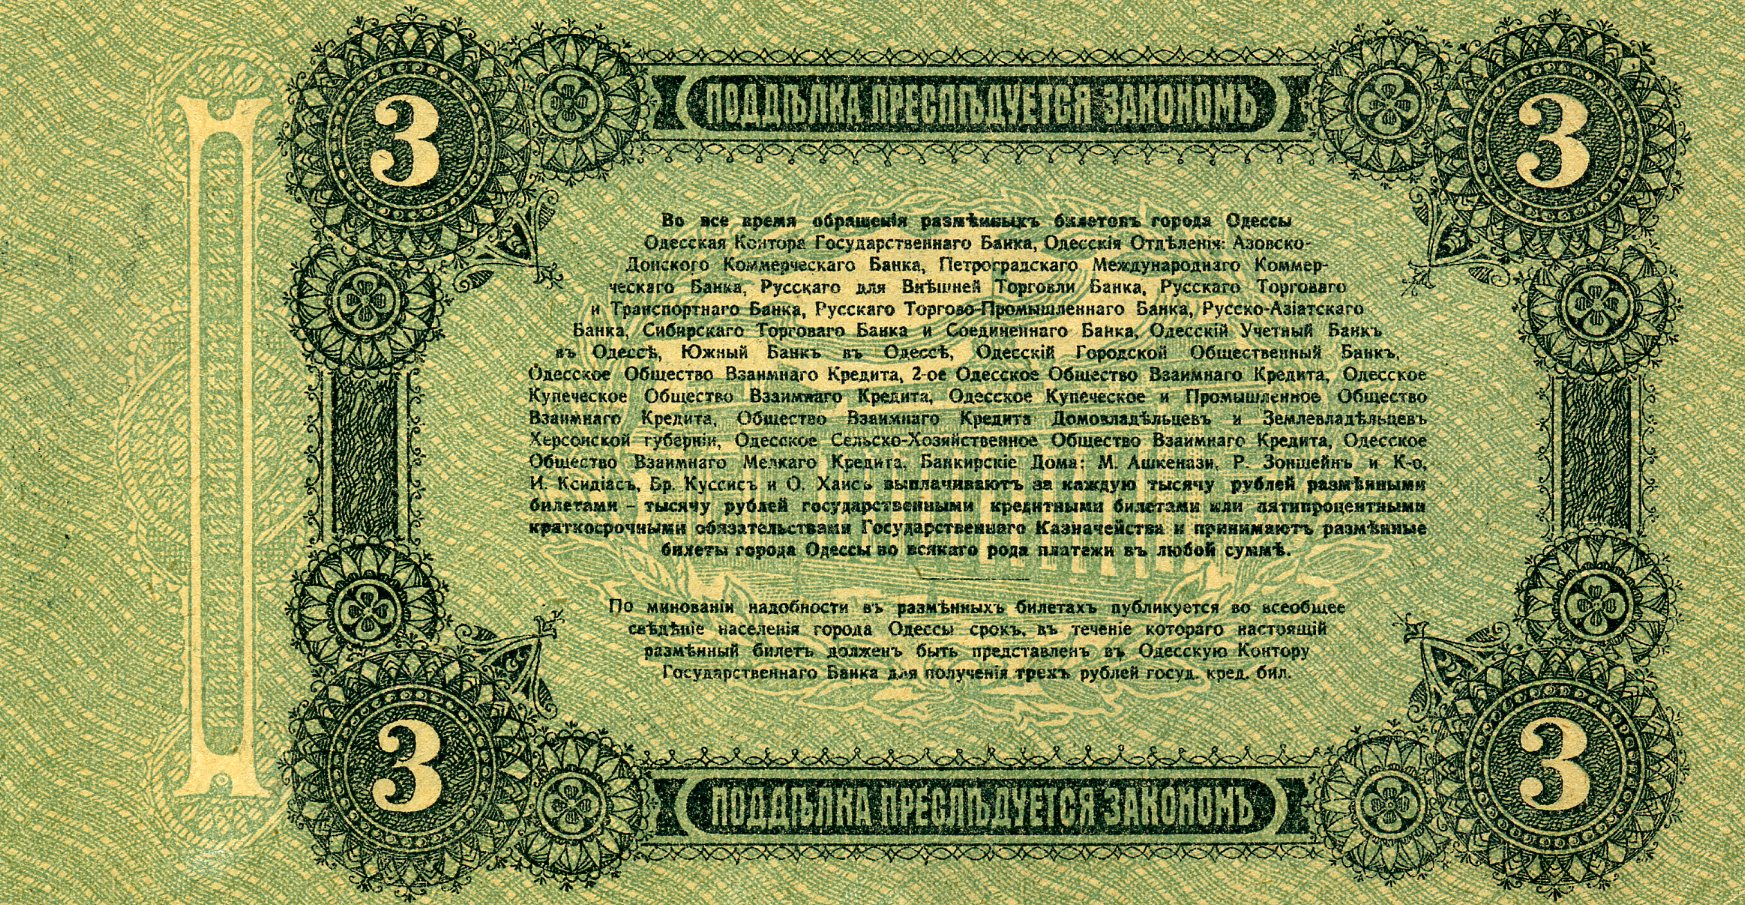 Разменный билет города Одессы 3 рубля 1917 года. Реверс. Реферат Рефератович.